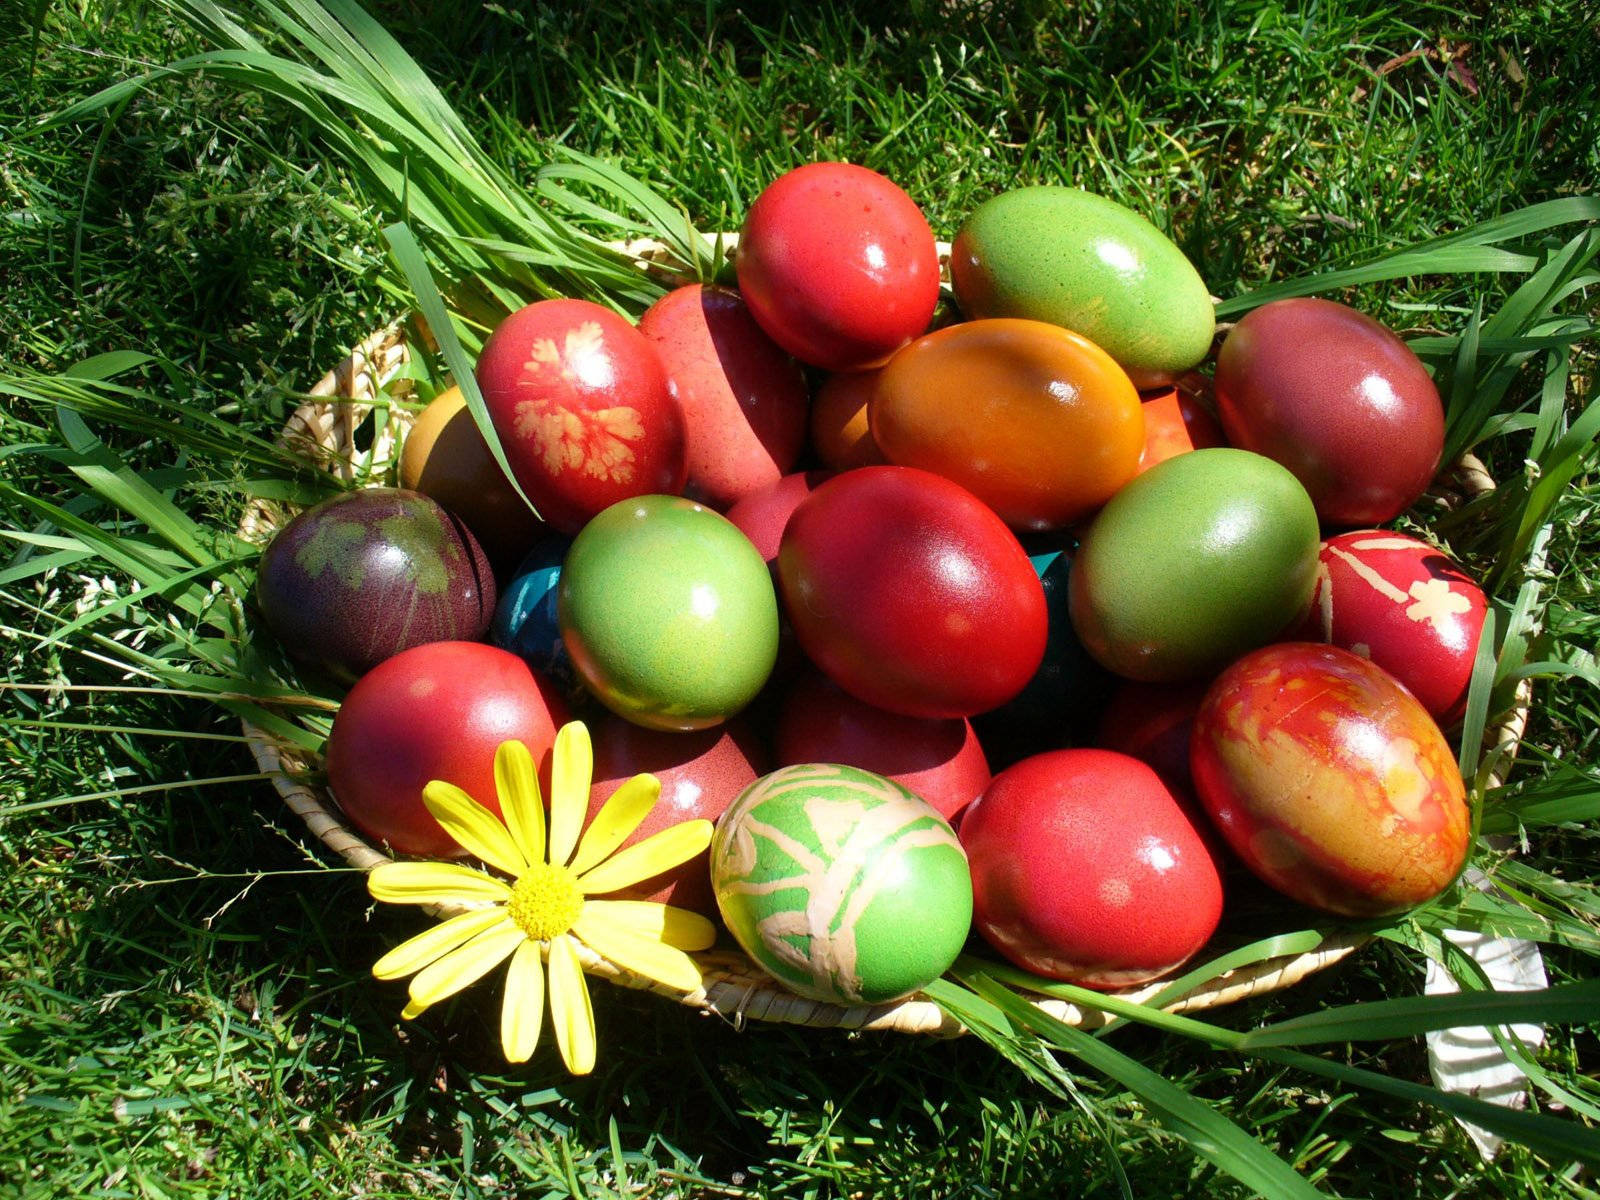 Cute Easter Basket